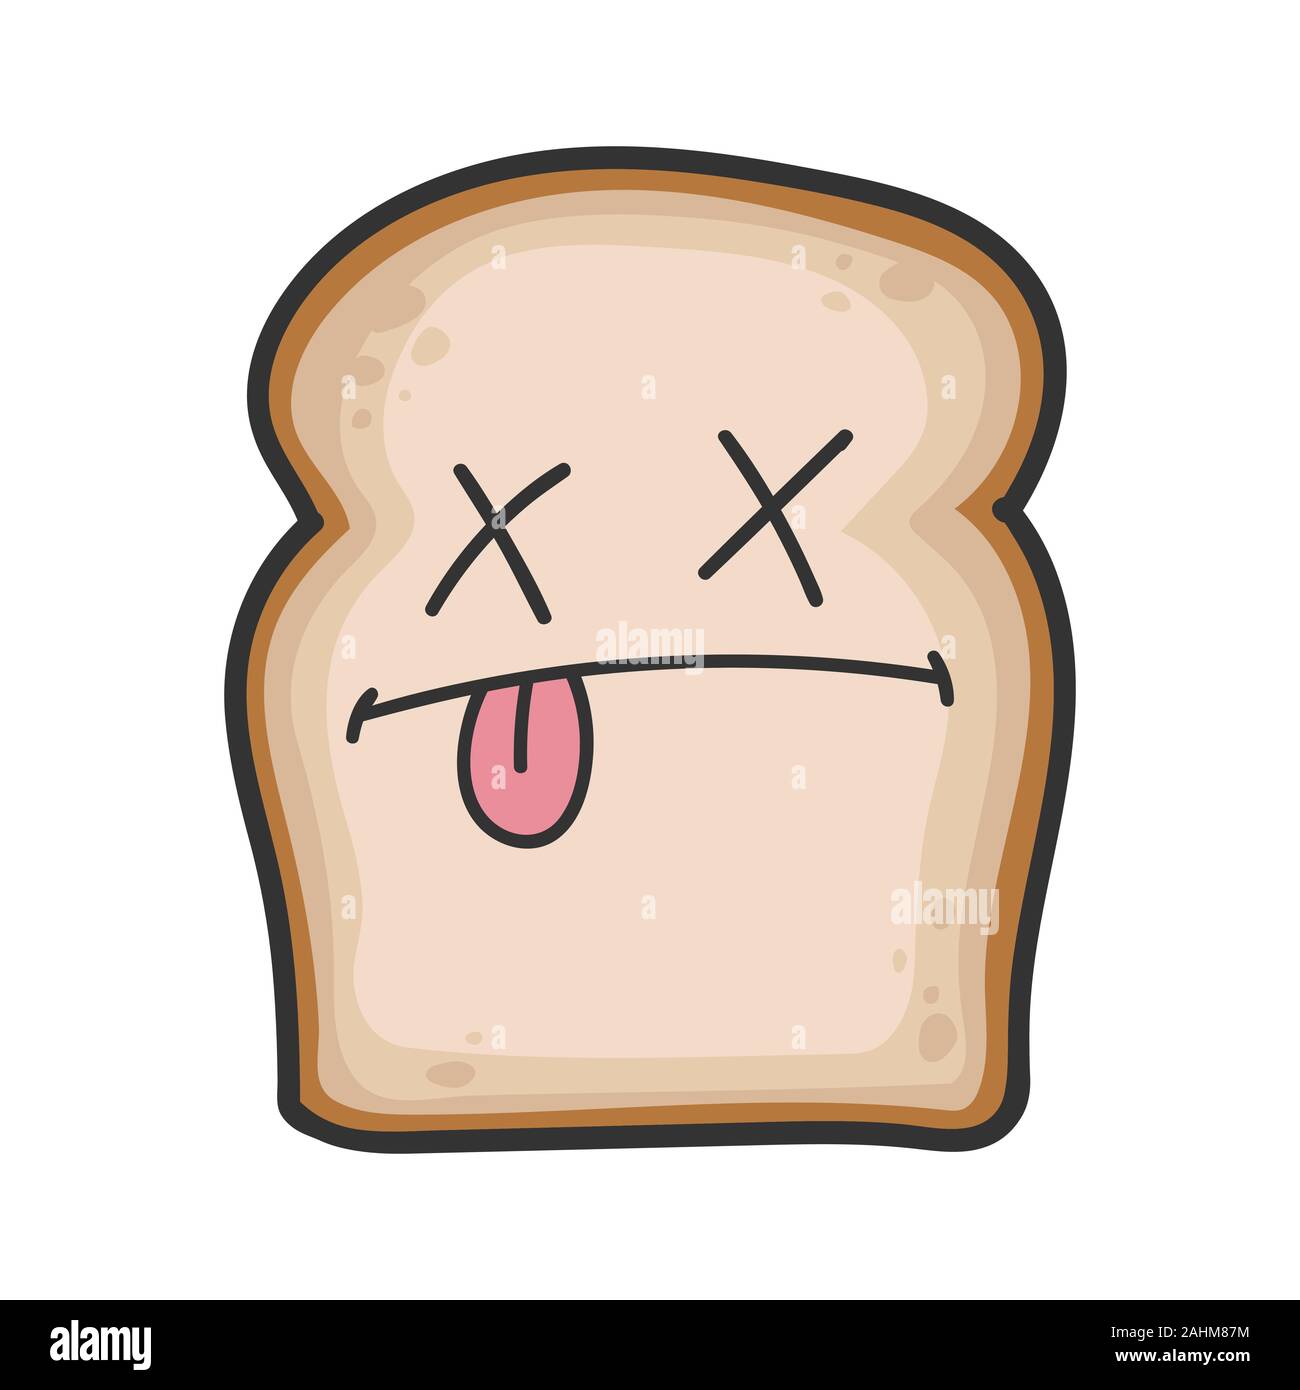 Cartone animato di pane immagini e fotografie stock ad alta risoluzione -  Alamy